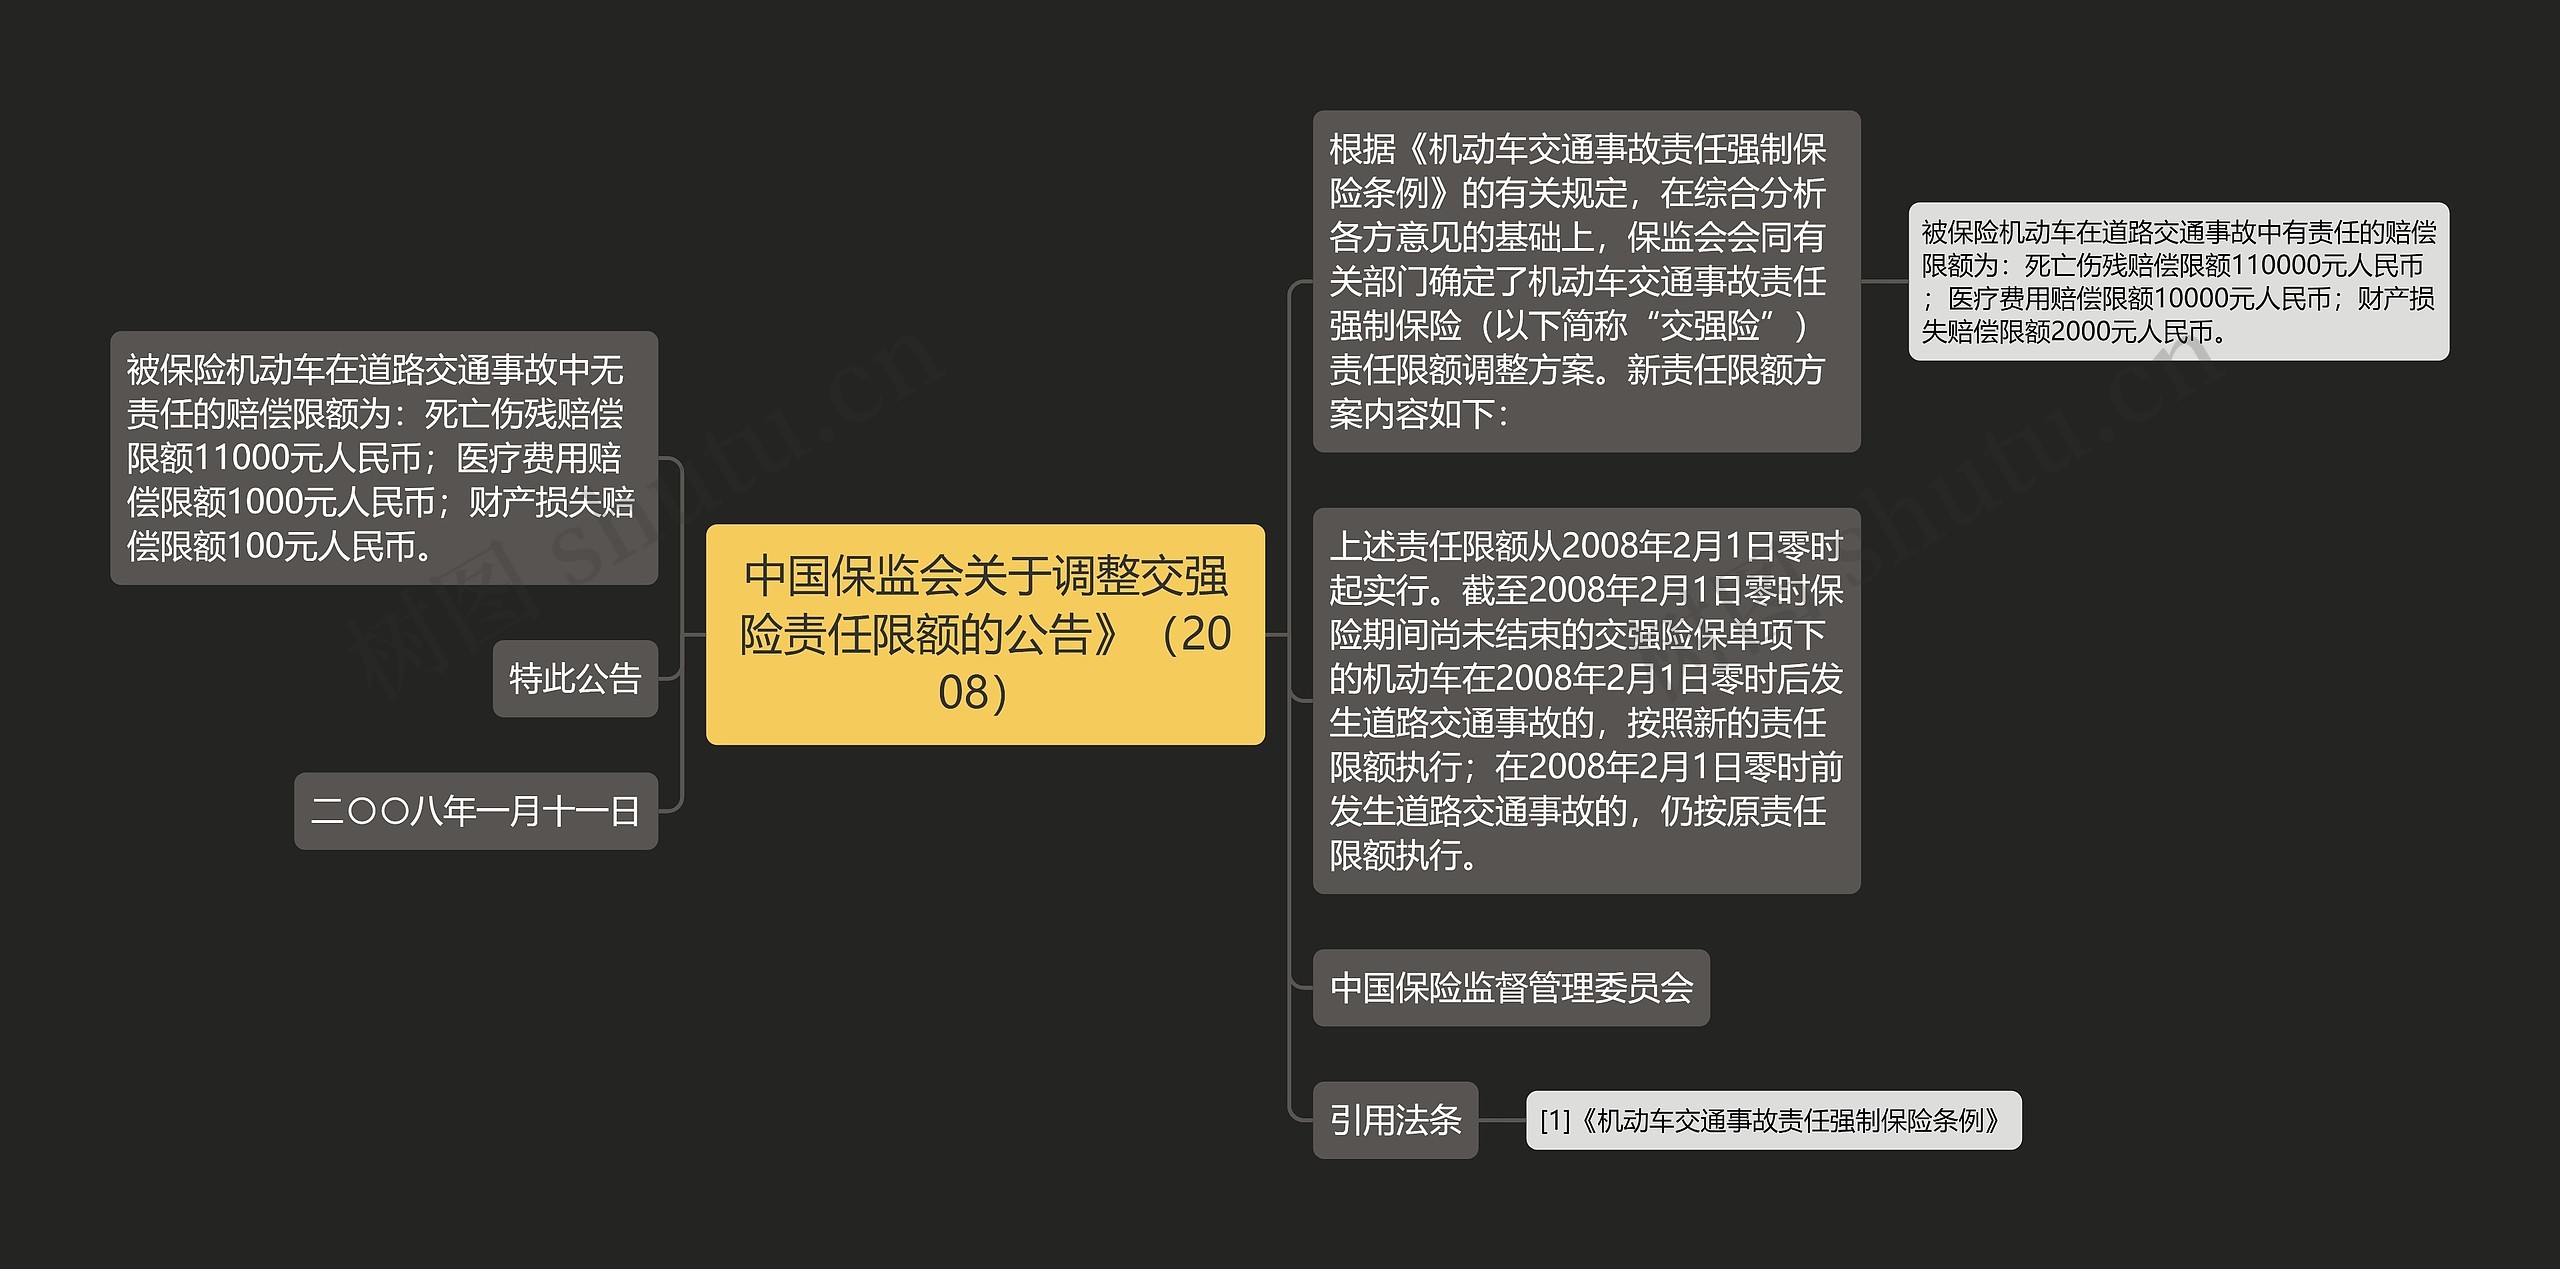 中国保监会关于调整交强险责任限额的公告》（2008）思维导图